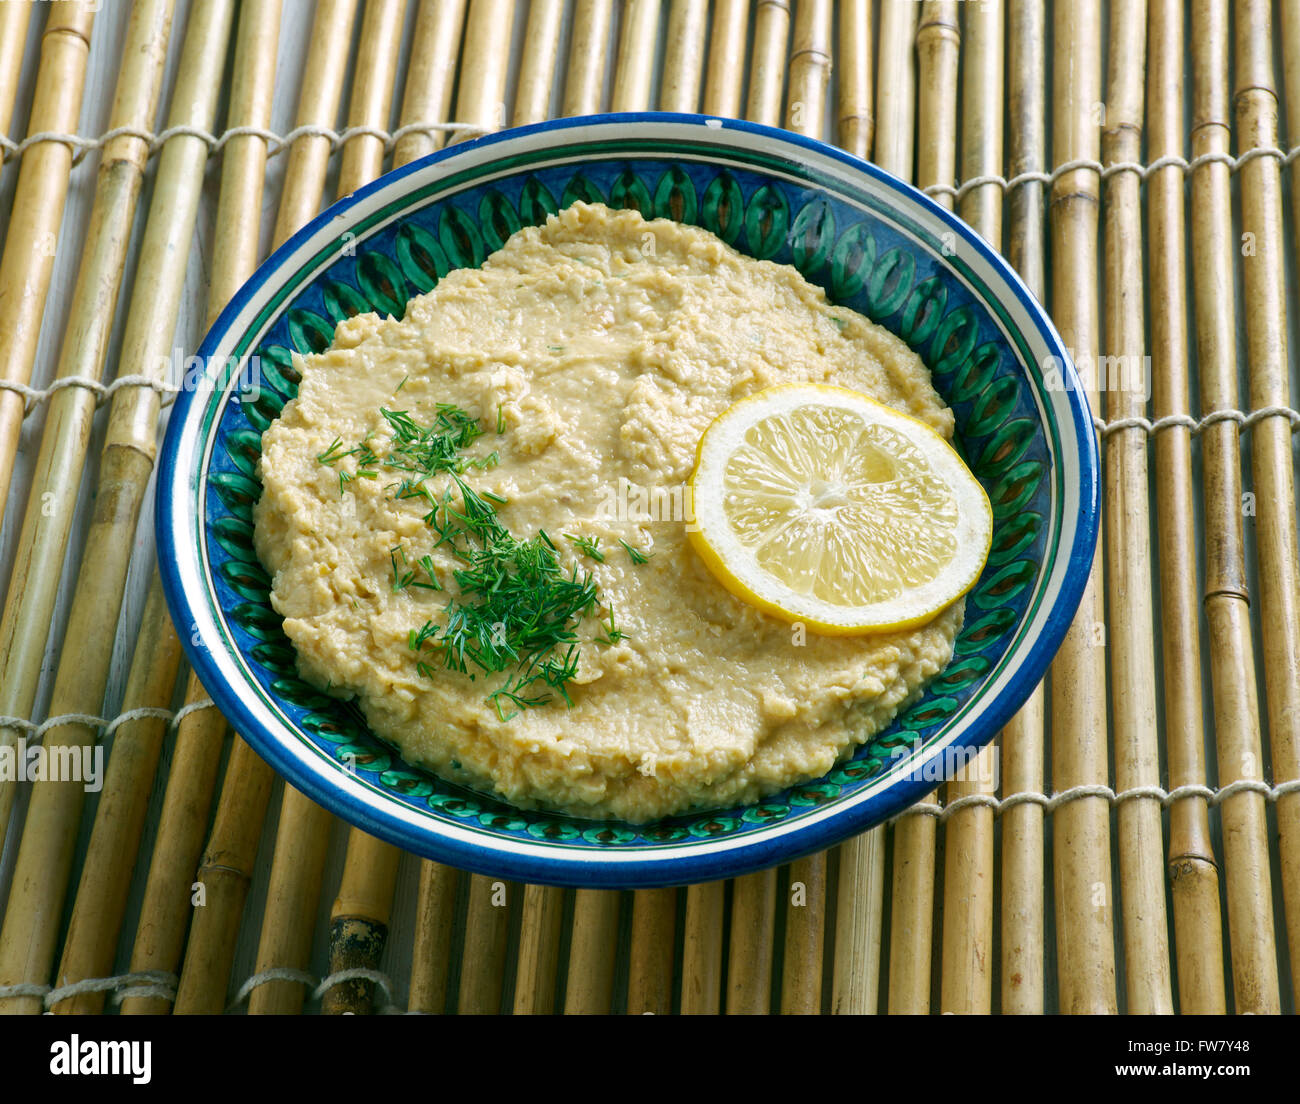 Limon Soslu Humus - Hummus with Lemon Sauce Stock Photo